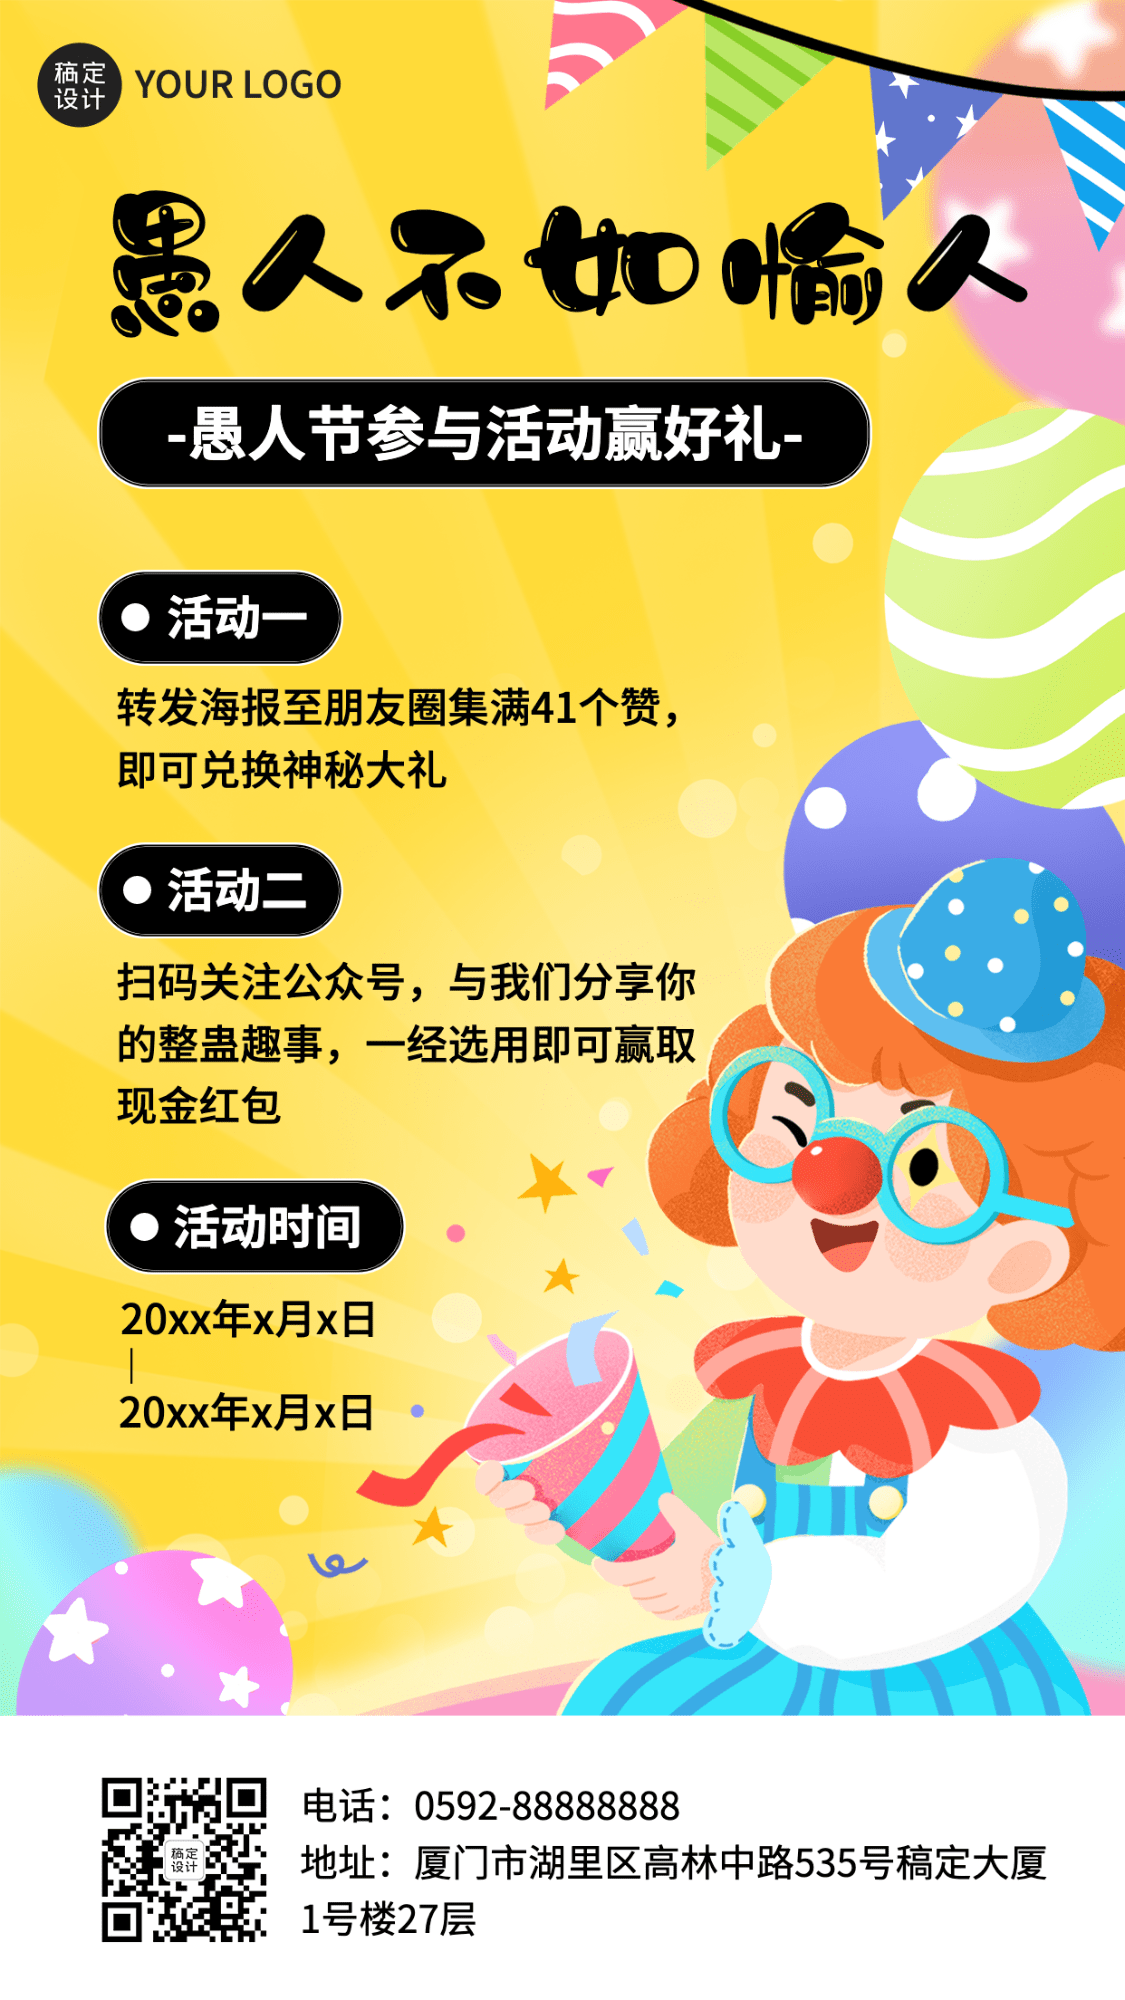 愚人节节日祝福插画手机海报预览效果